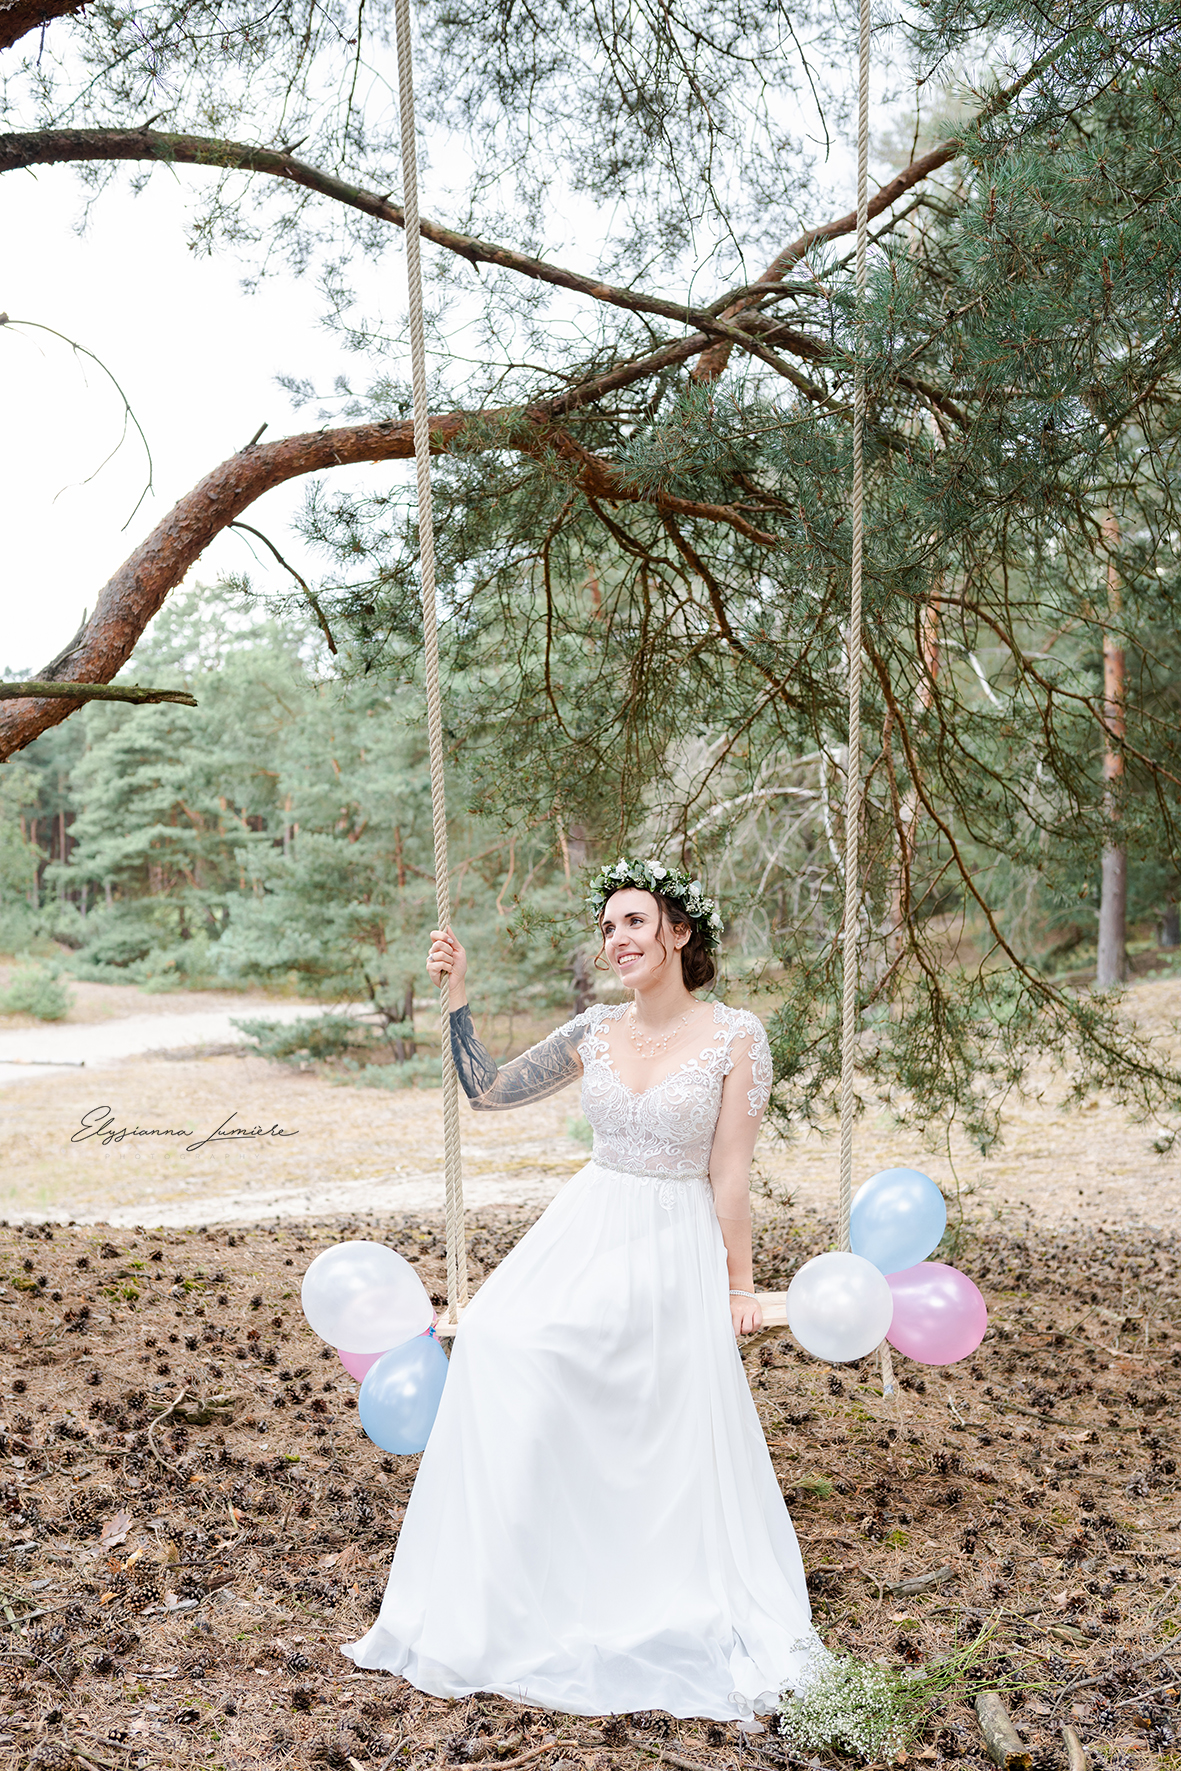 Braut mit Luftballons auf einer Schaukel im Wald Hochzeitsfotos